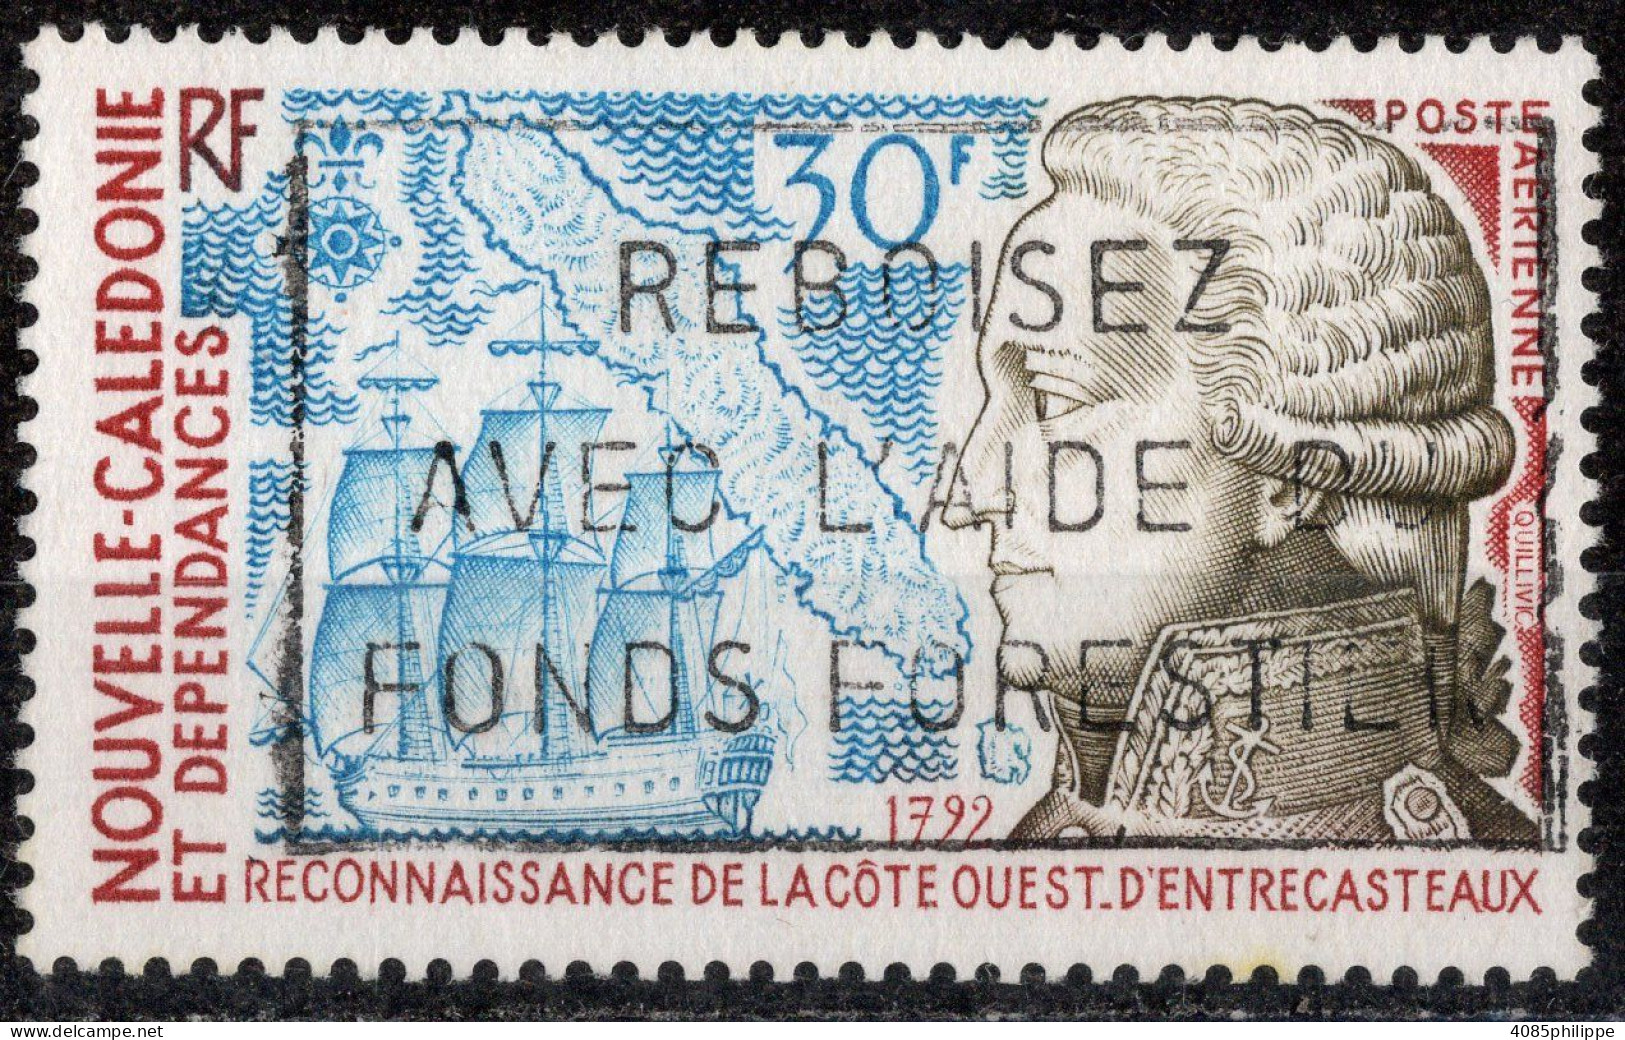 Nvelle CALEDONIE Timbre-Poste Aérienne N°157 Oblitéré Cote : 2€30 - Used Stamps